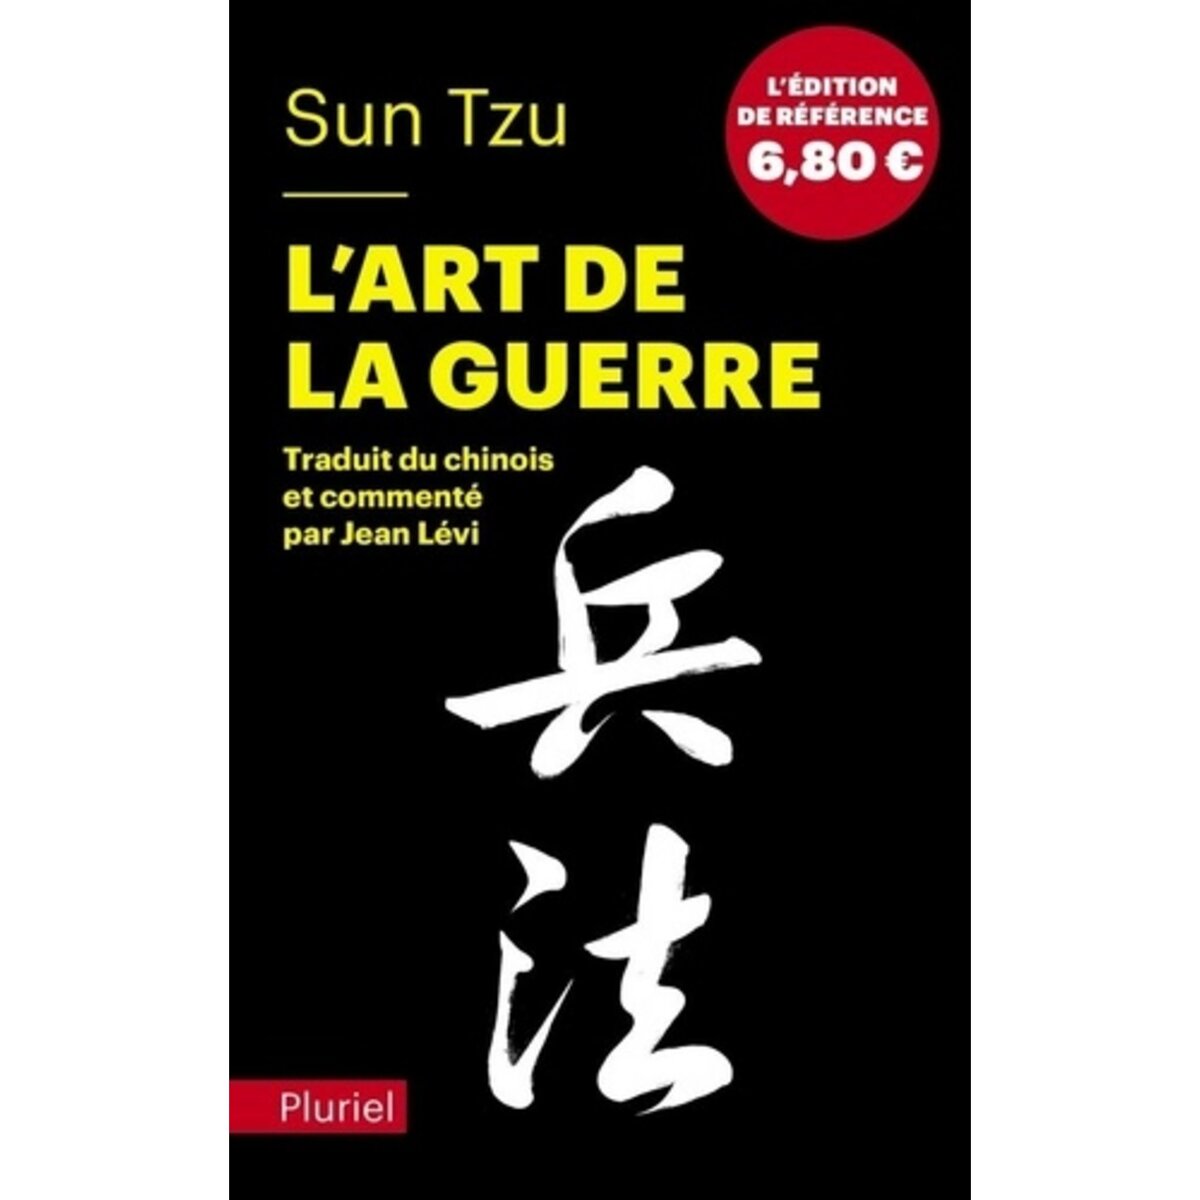  L'ART DE LA GUERRE, Sun Tzu